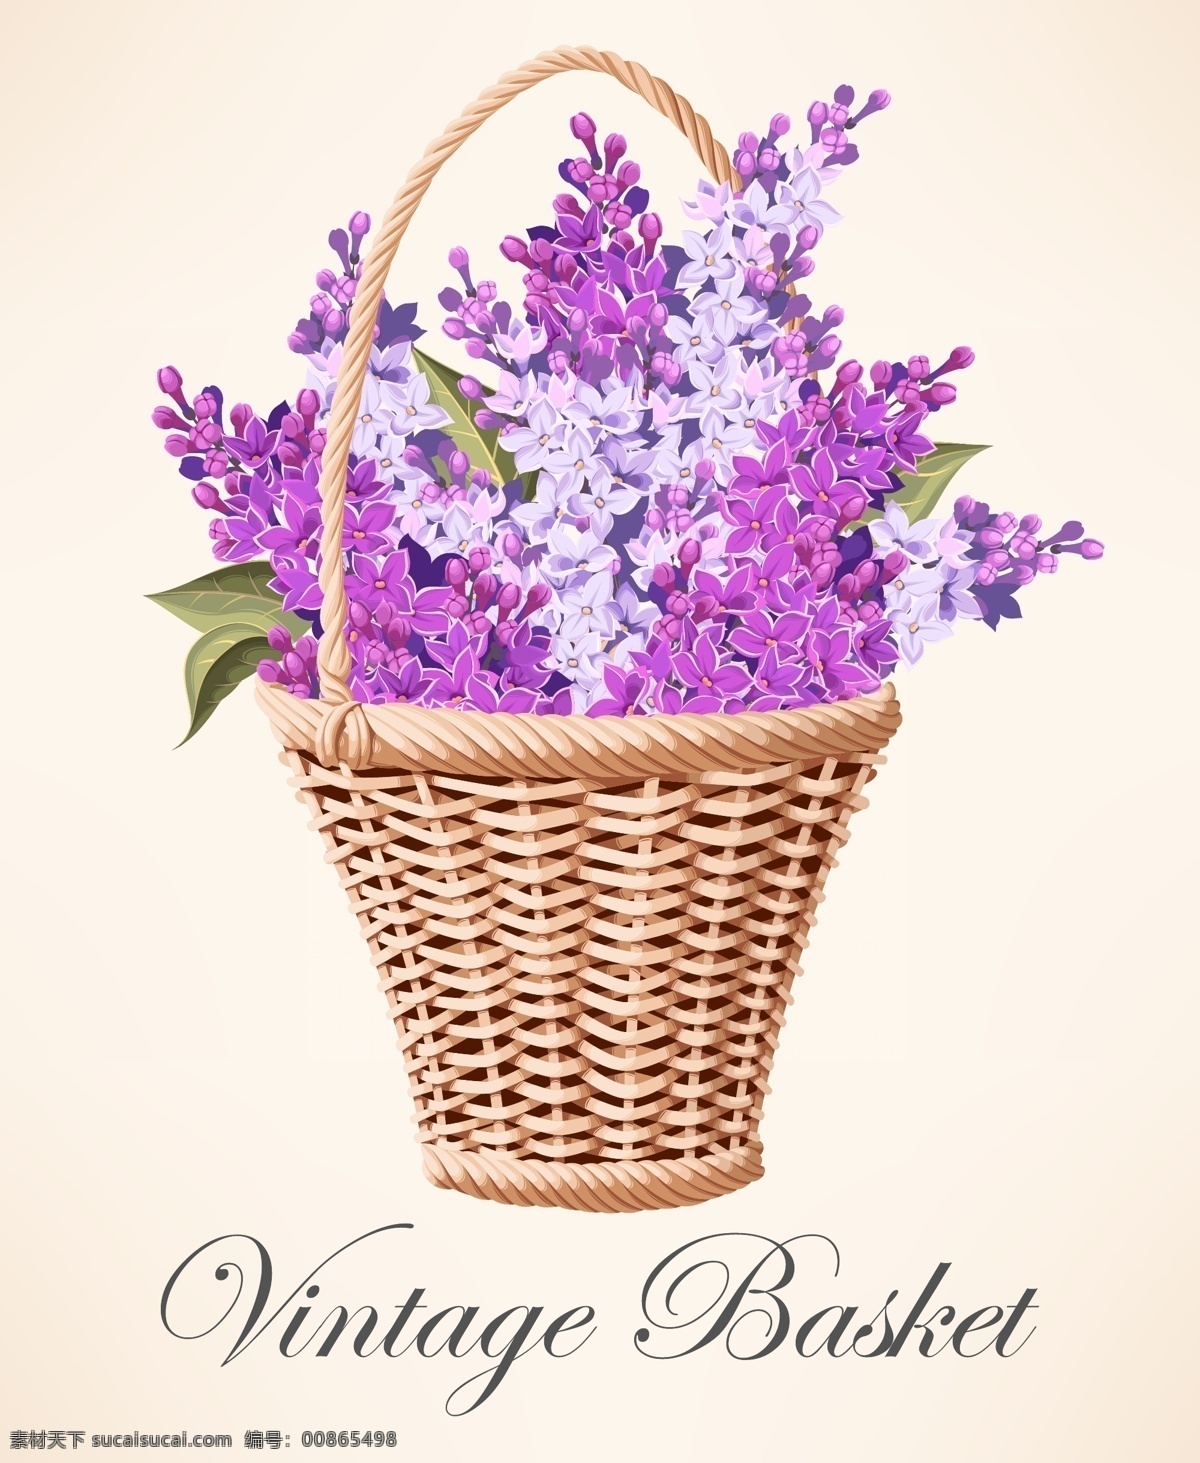 装满 紫丁香 花篮 矢量 丁香花 紫丁香的花篮 装满紫丁香 名片卡片